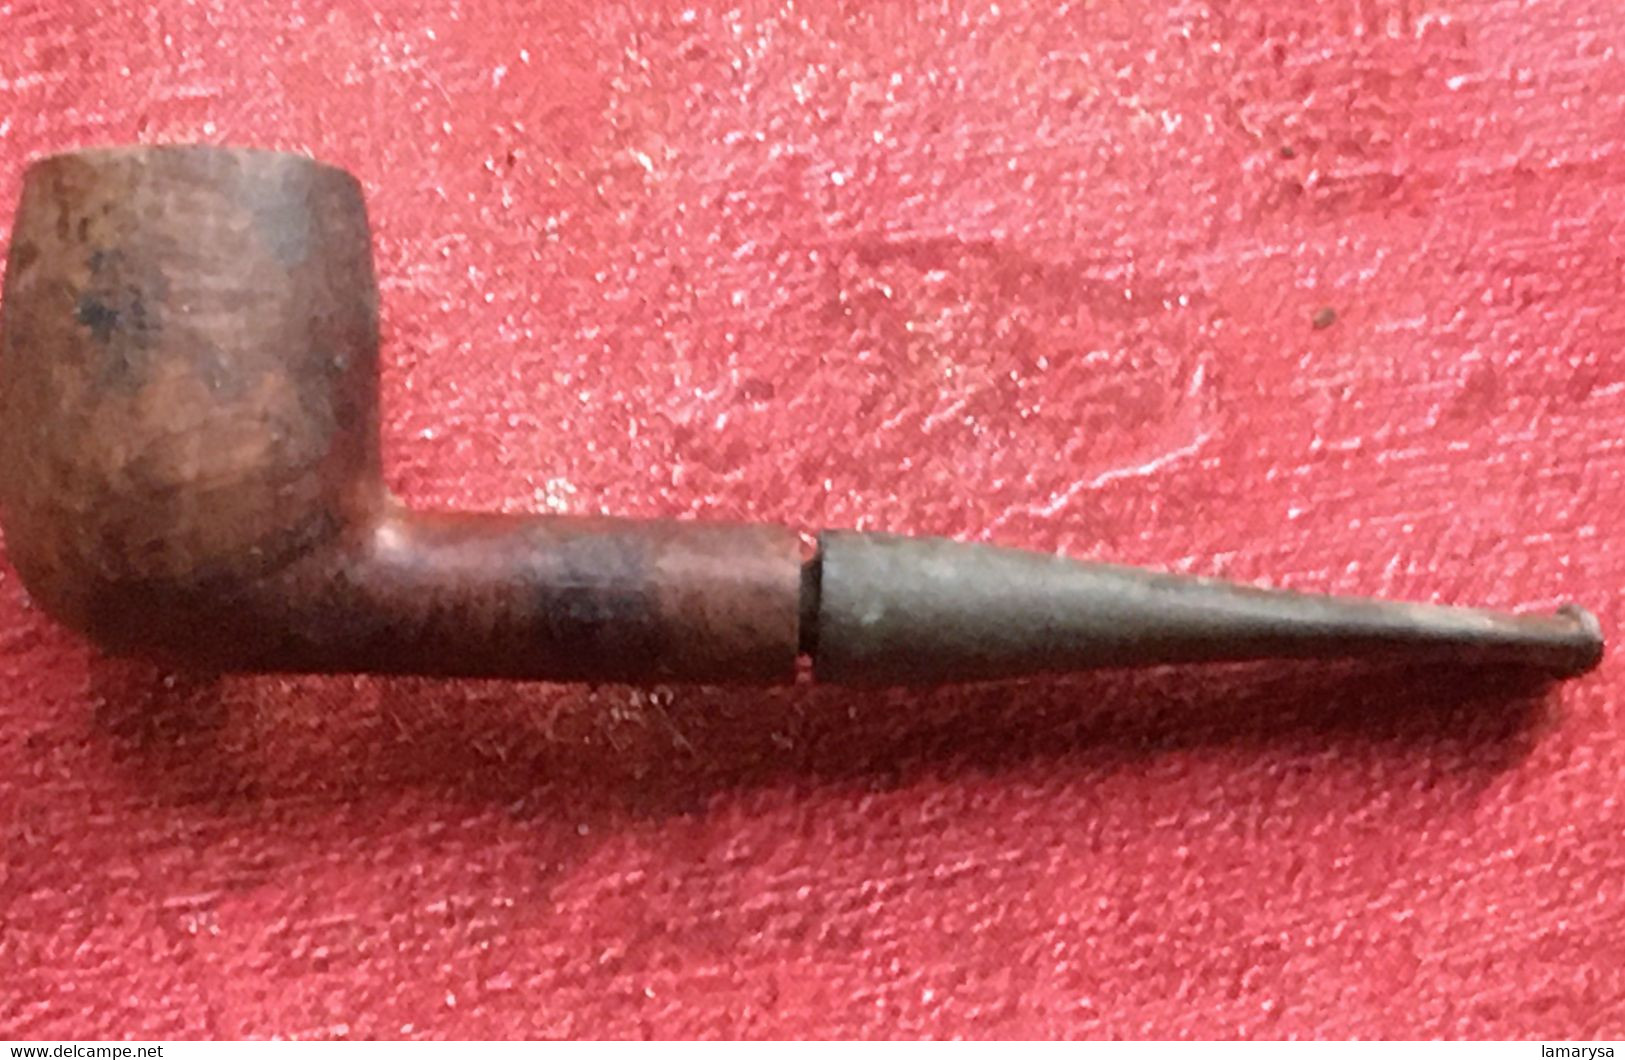 Lot de 9 pipes en bruyère usagées-☛Années 1950/60-Tabac (objets liés)-☛Vintage Vendu dans leur jus.Fabrication française